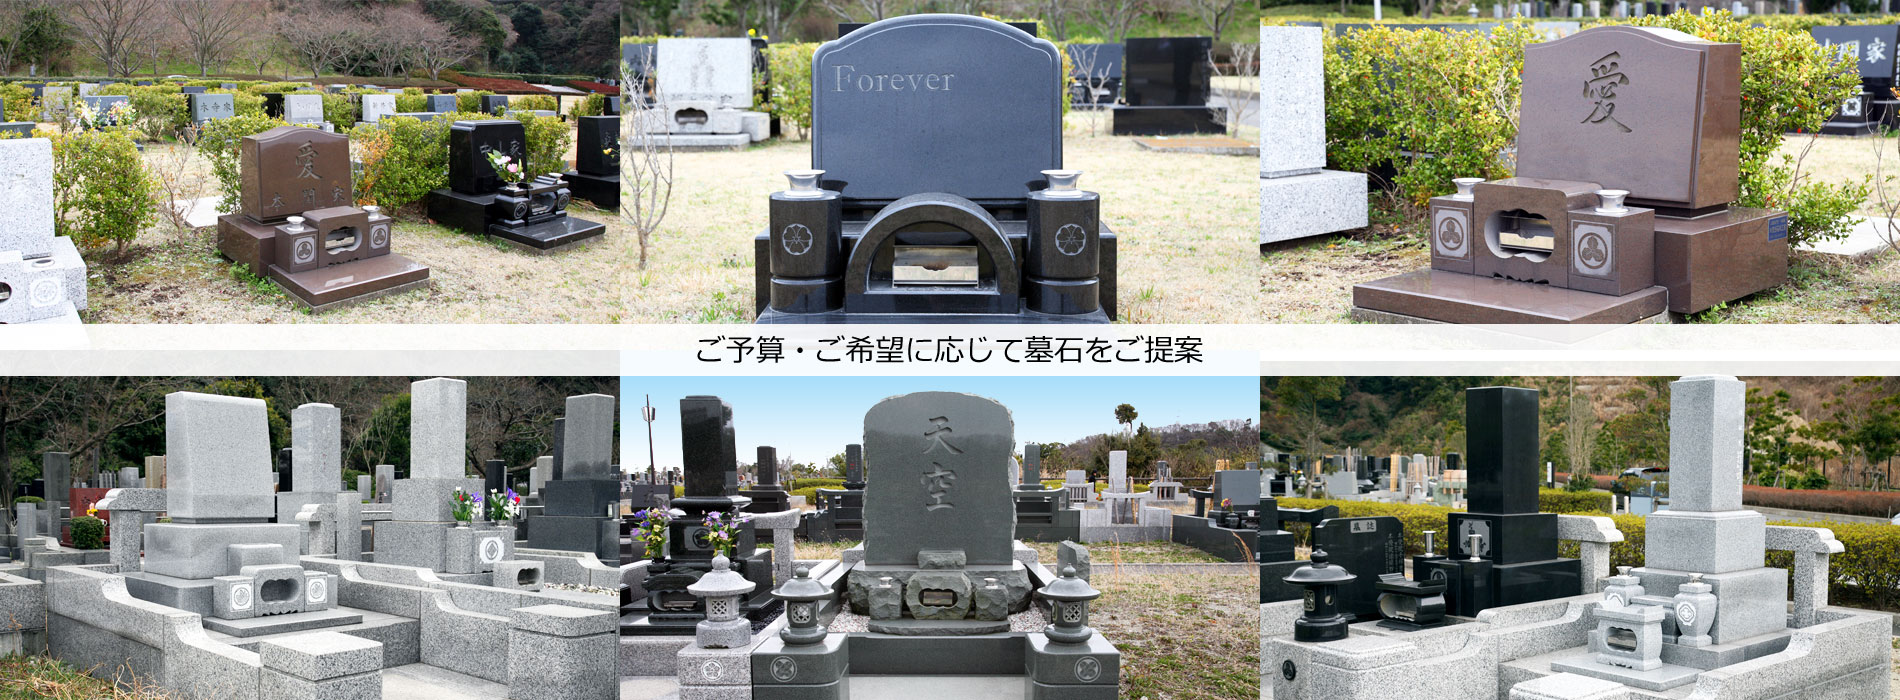 横須賀市営公園墓地の募集と申込は京浜石材工業